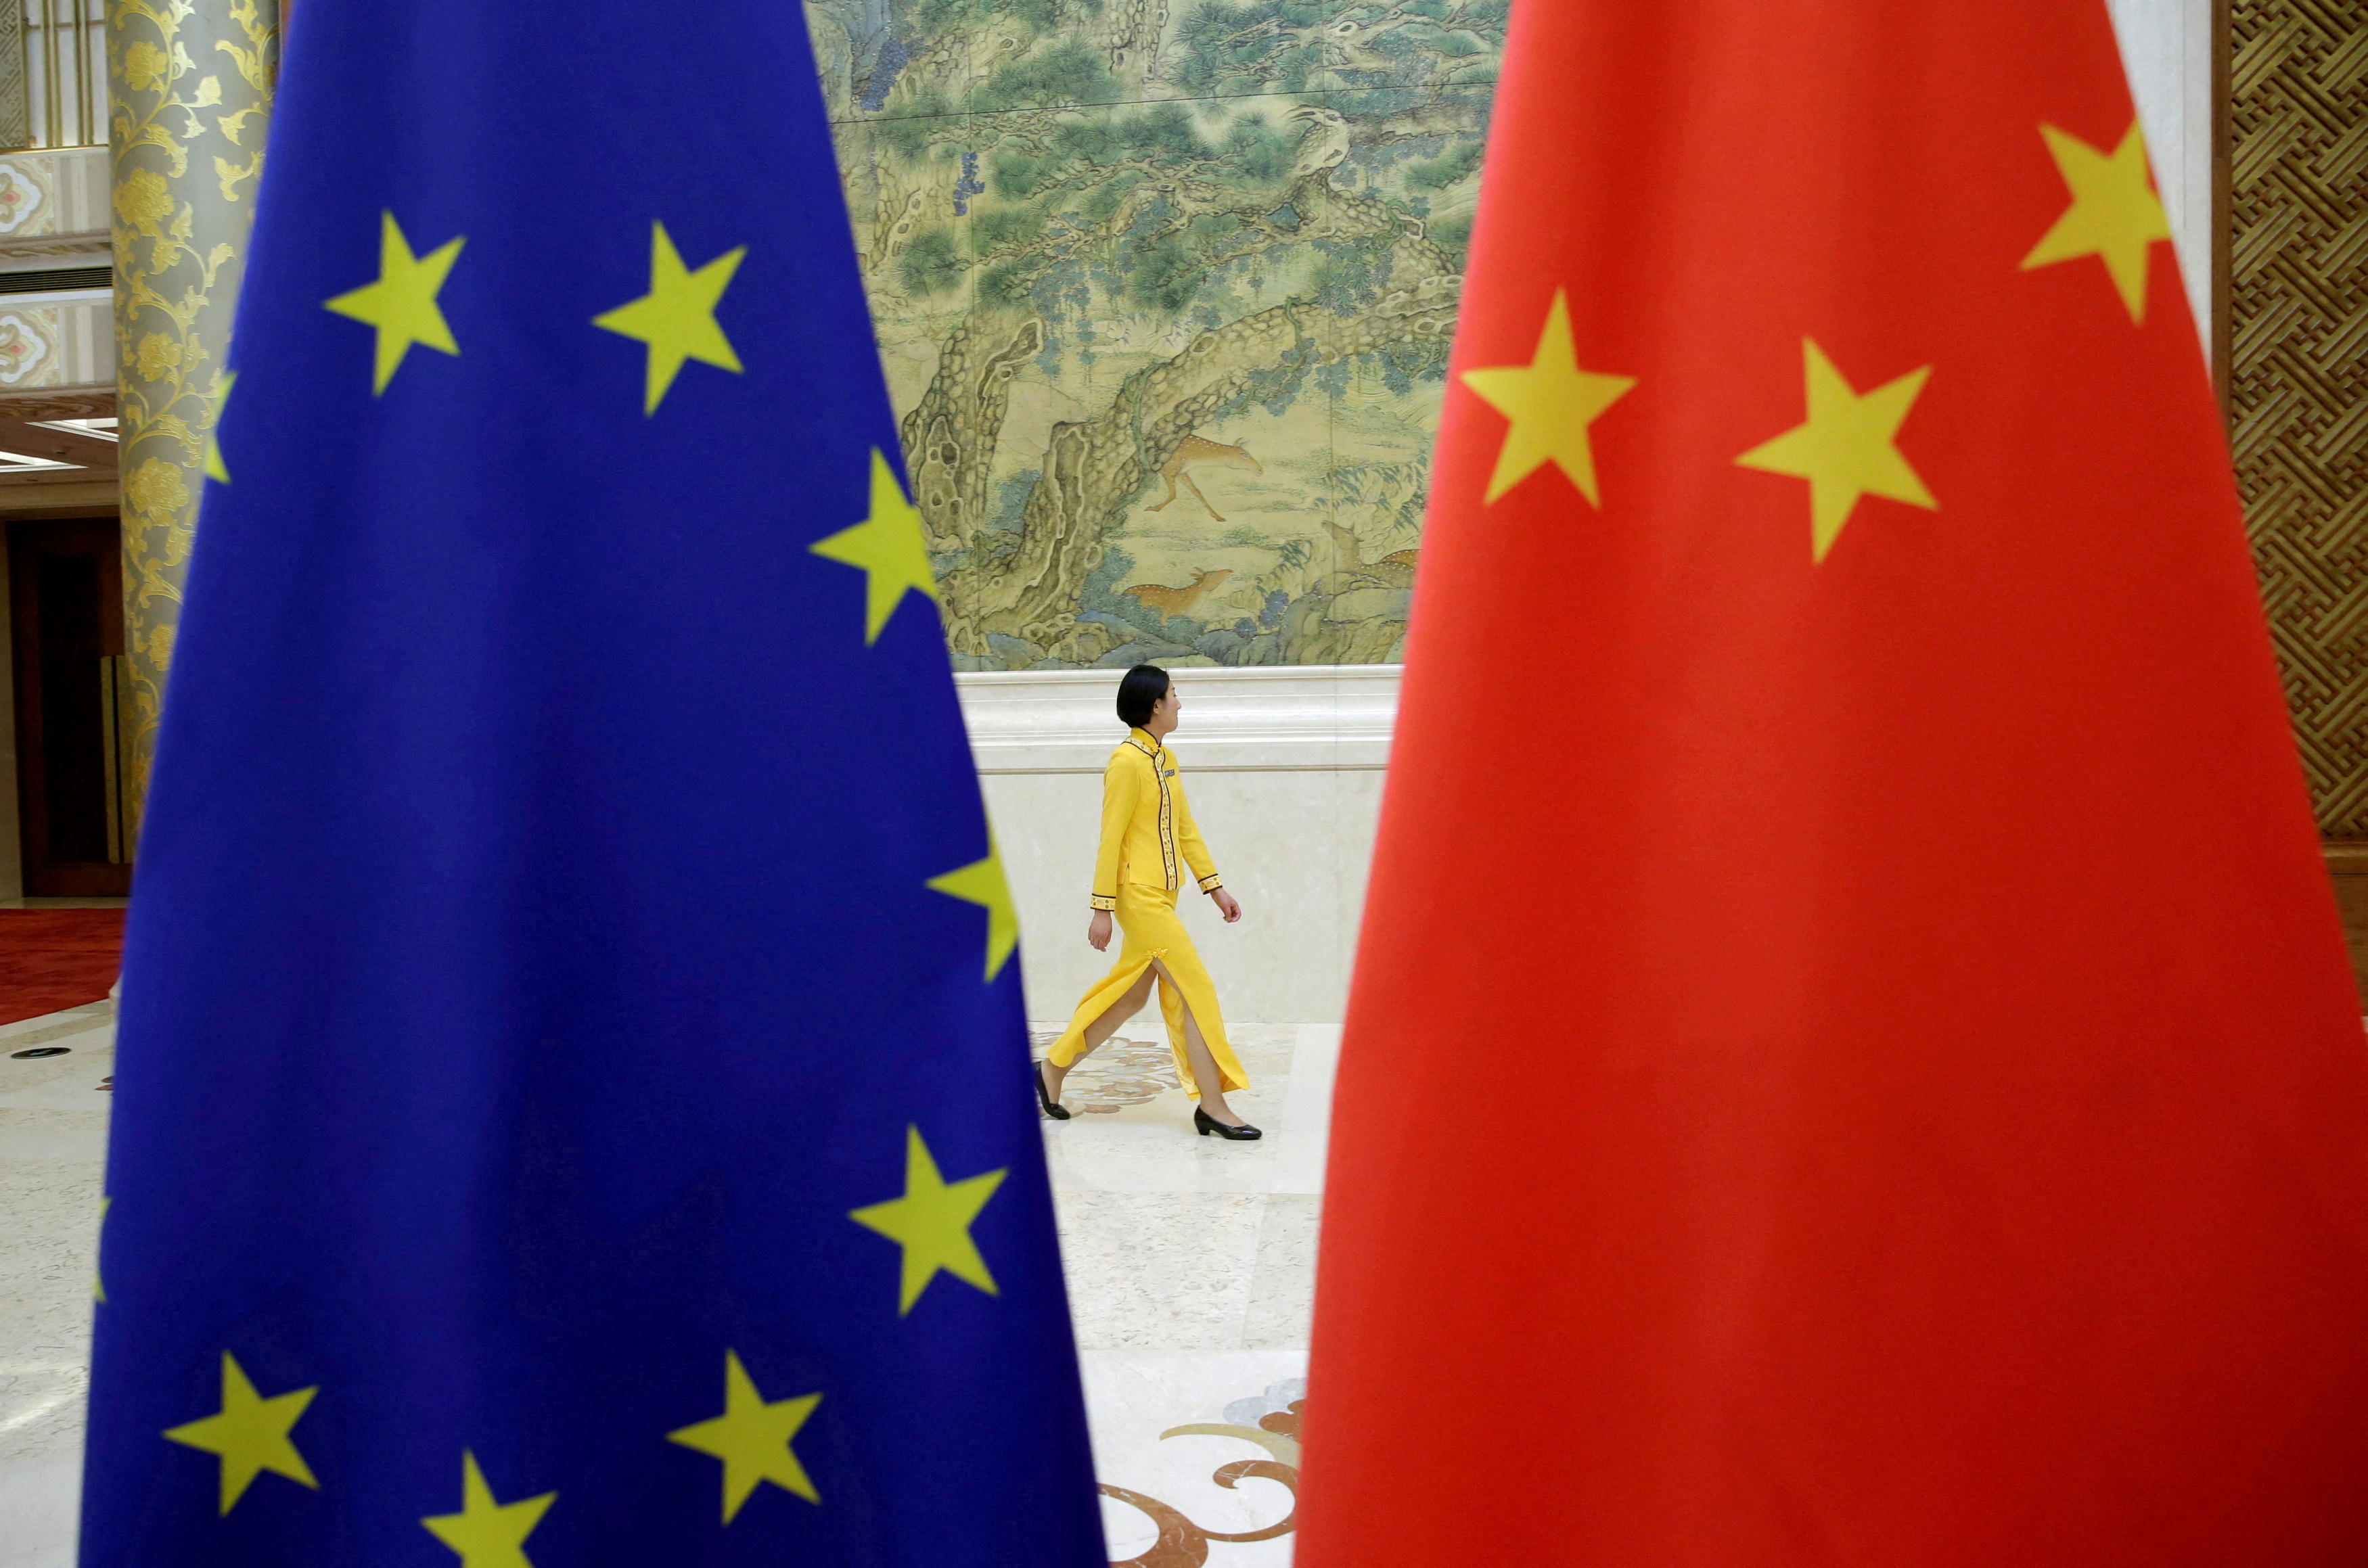 La Chine menace les industriels européens de représailles après l'enquête de Bruxelles sur les subventions chinoises dans l'automobile